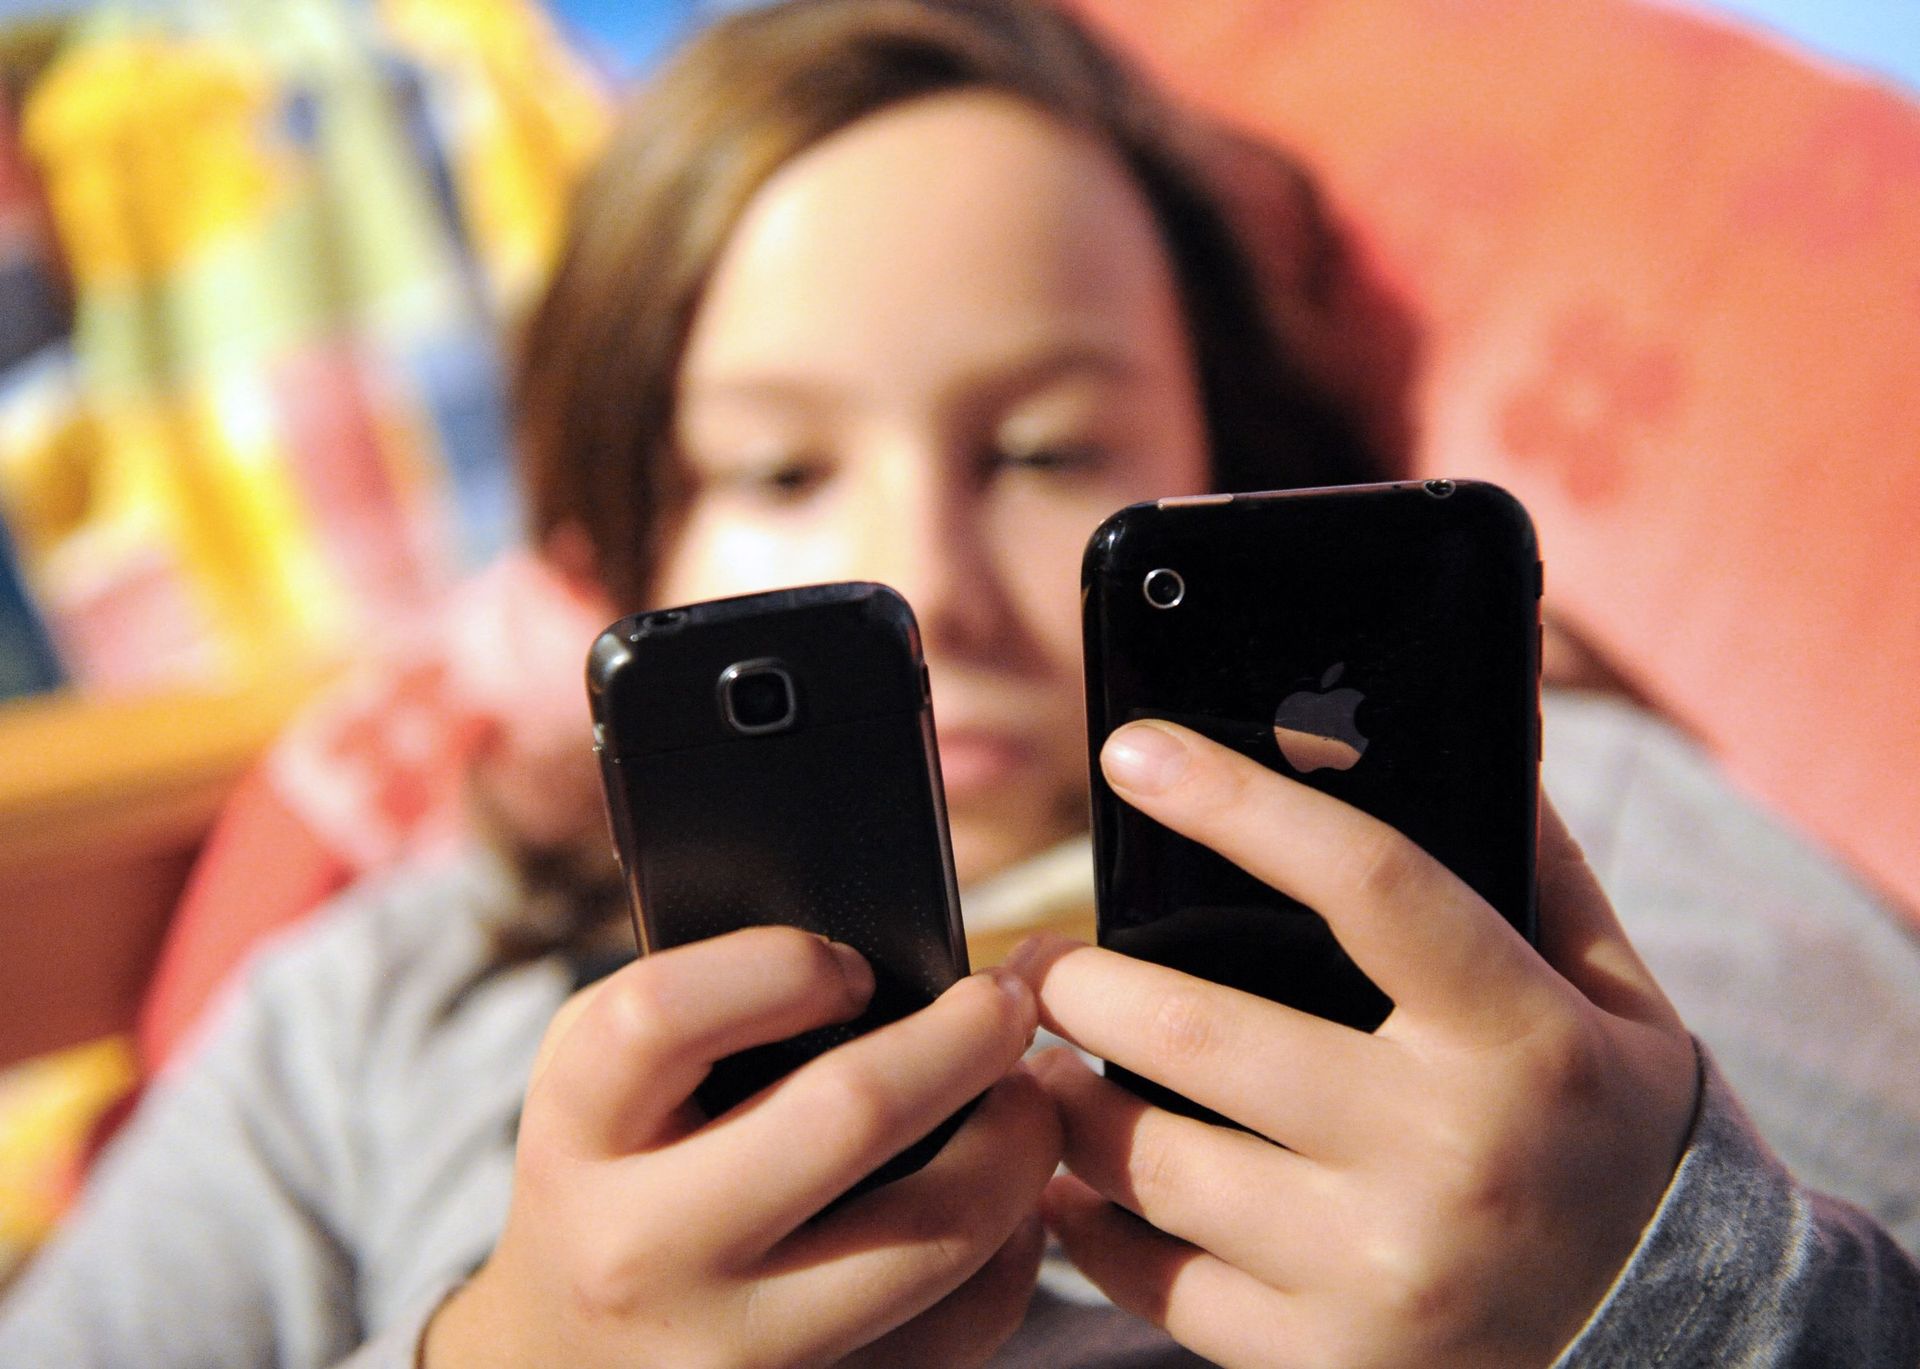 enfant fille 8 ans qui téléphone avec son téléphone portable